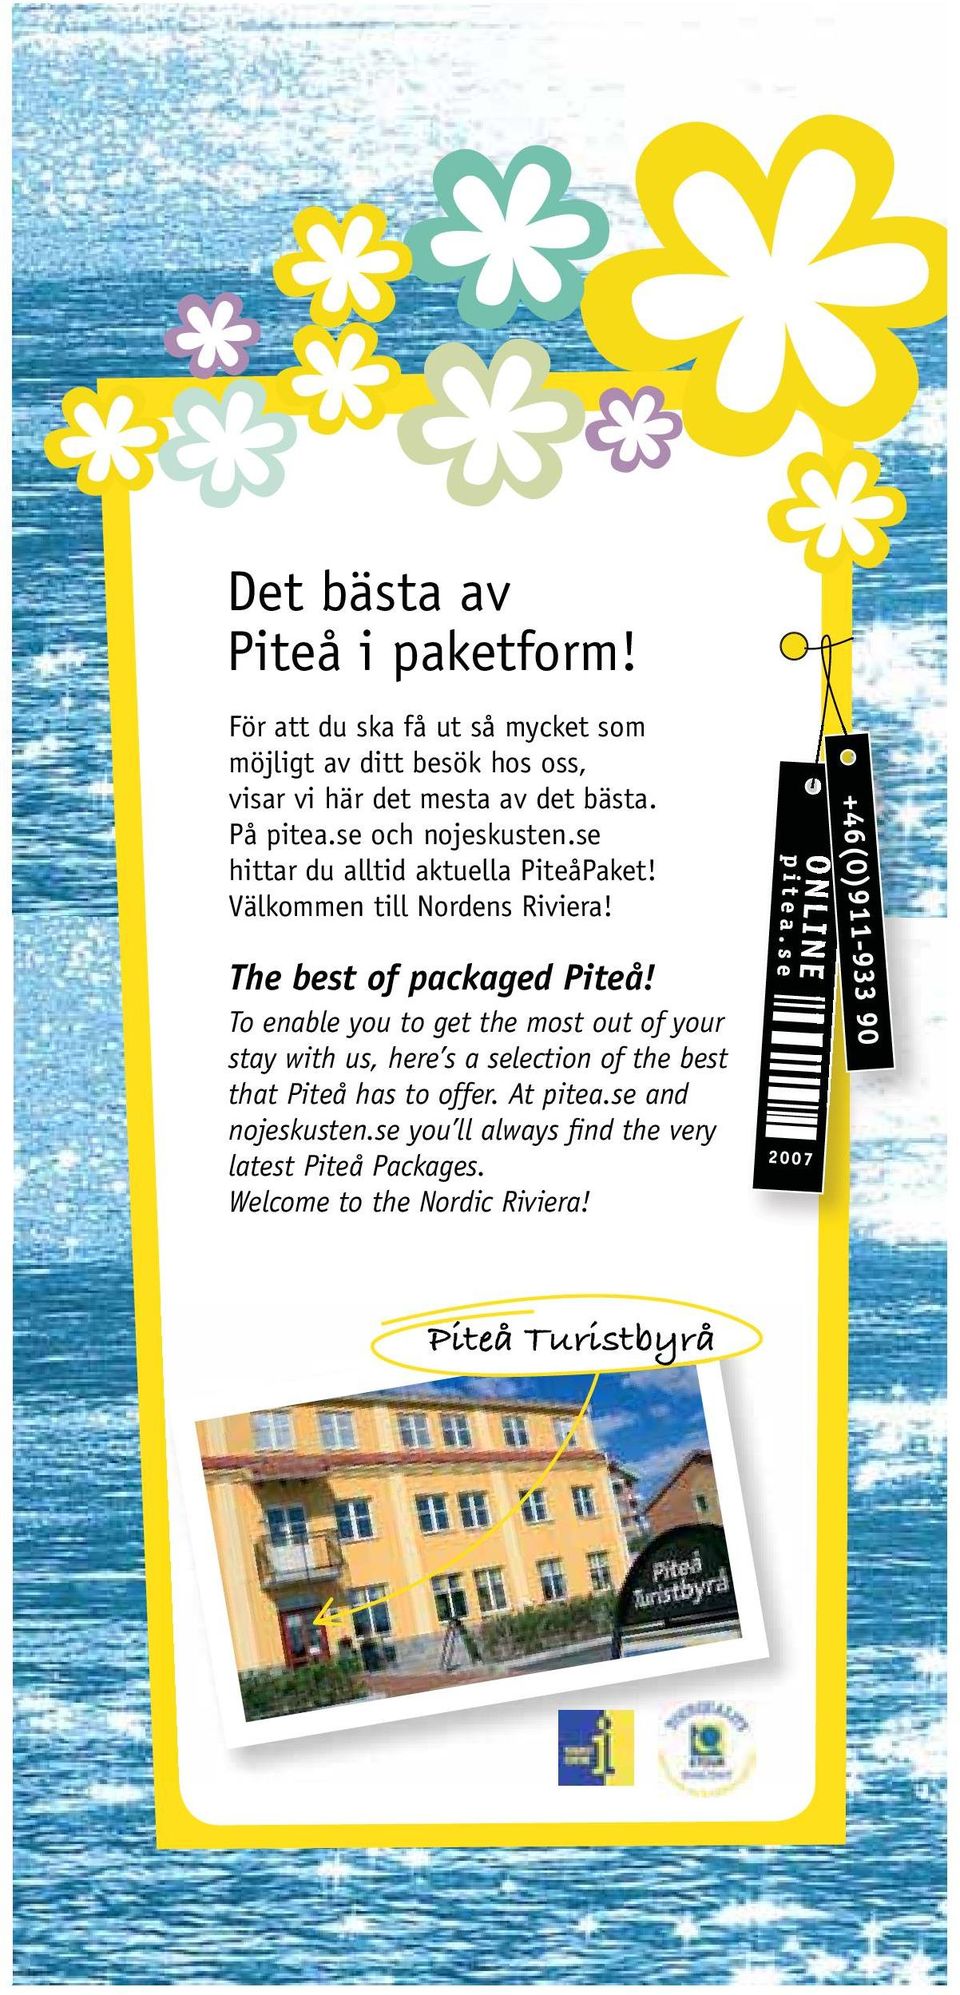 se och nojeskusten.se hittar du alltid aktuella PiteåPaket! Välkommen till Nordens Riviera! The best of packaged Piteå!